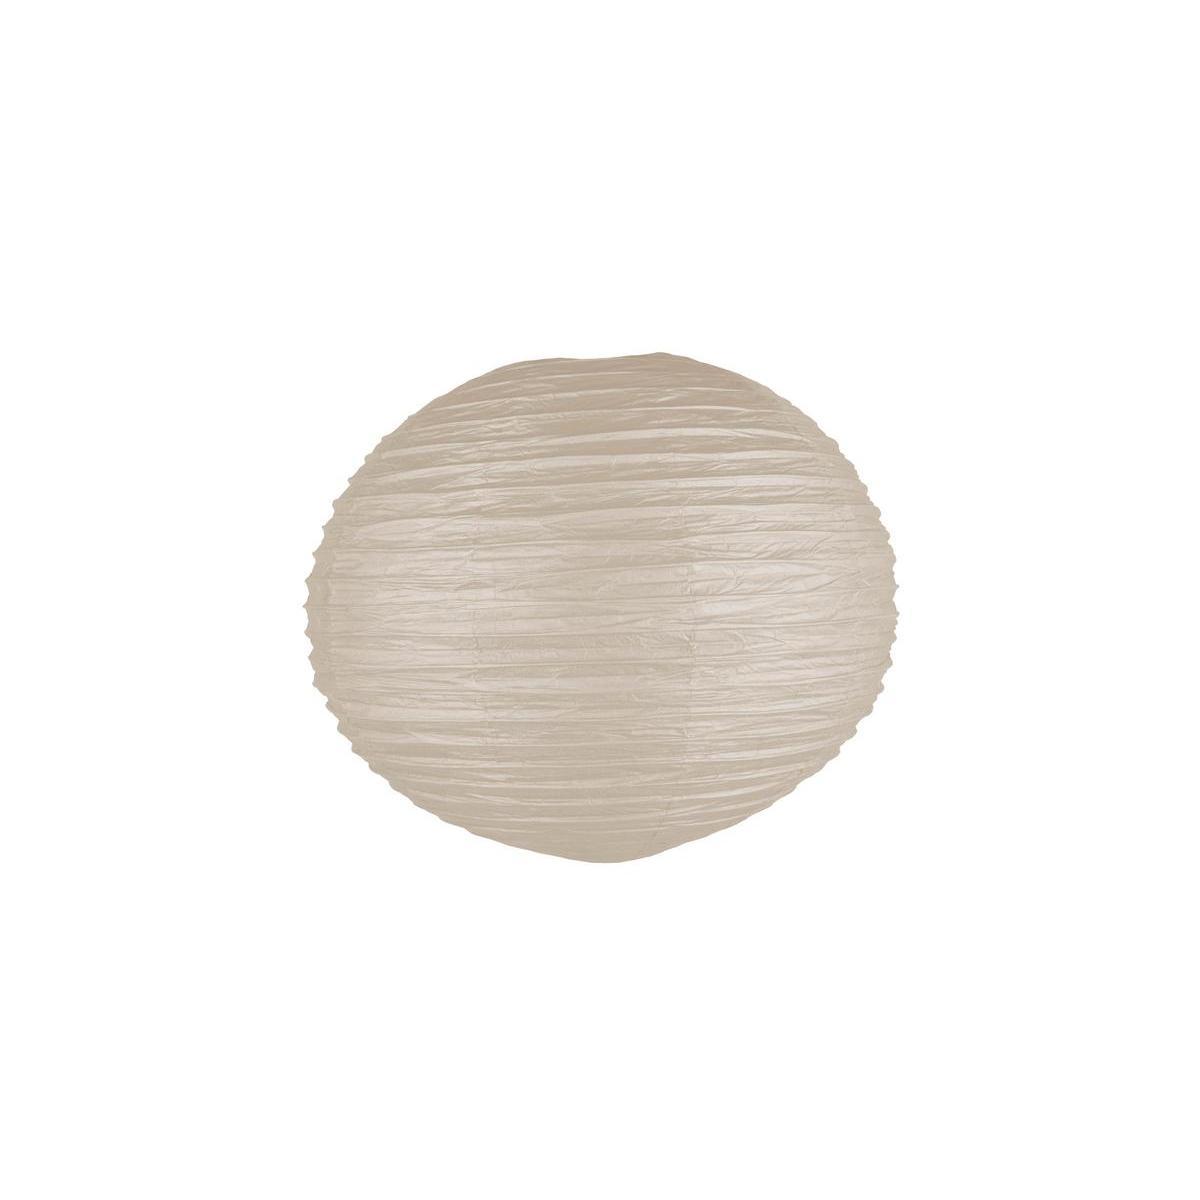 Boule japonaise luminaire - Papier - Diamètre 60 cm - Marron taupe